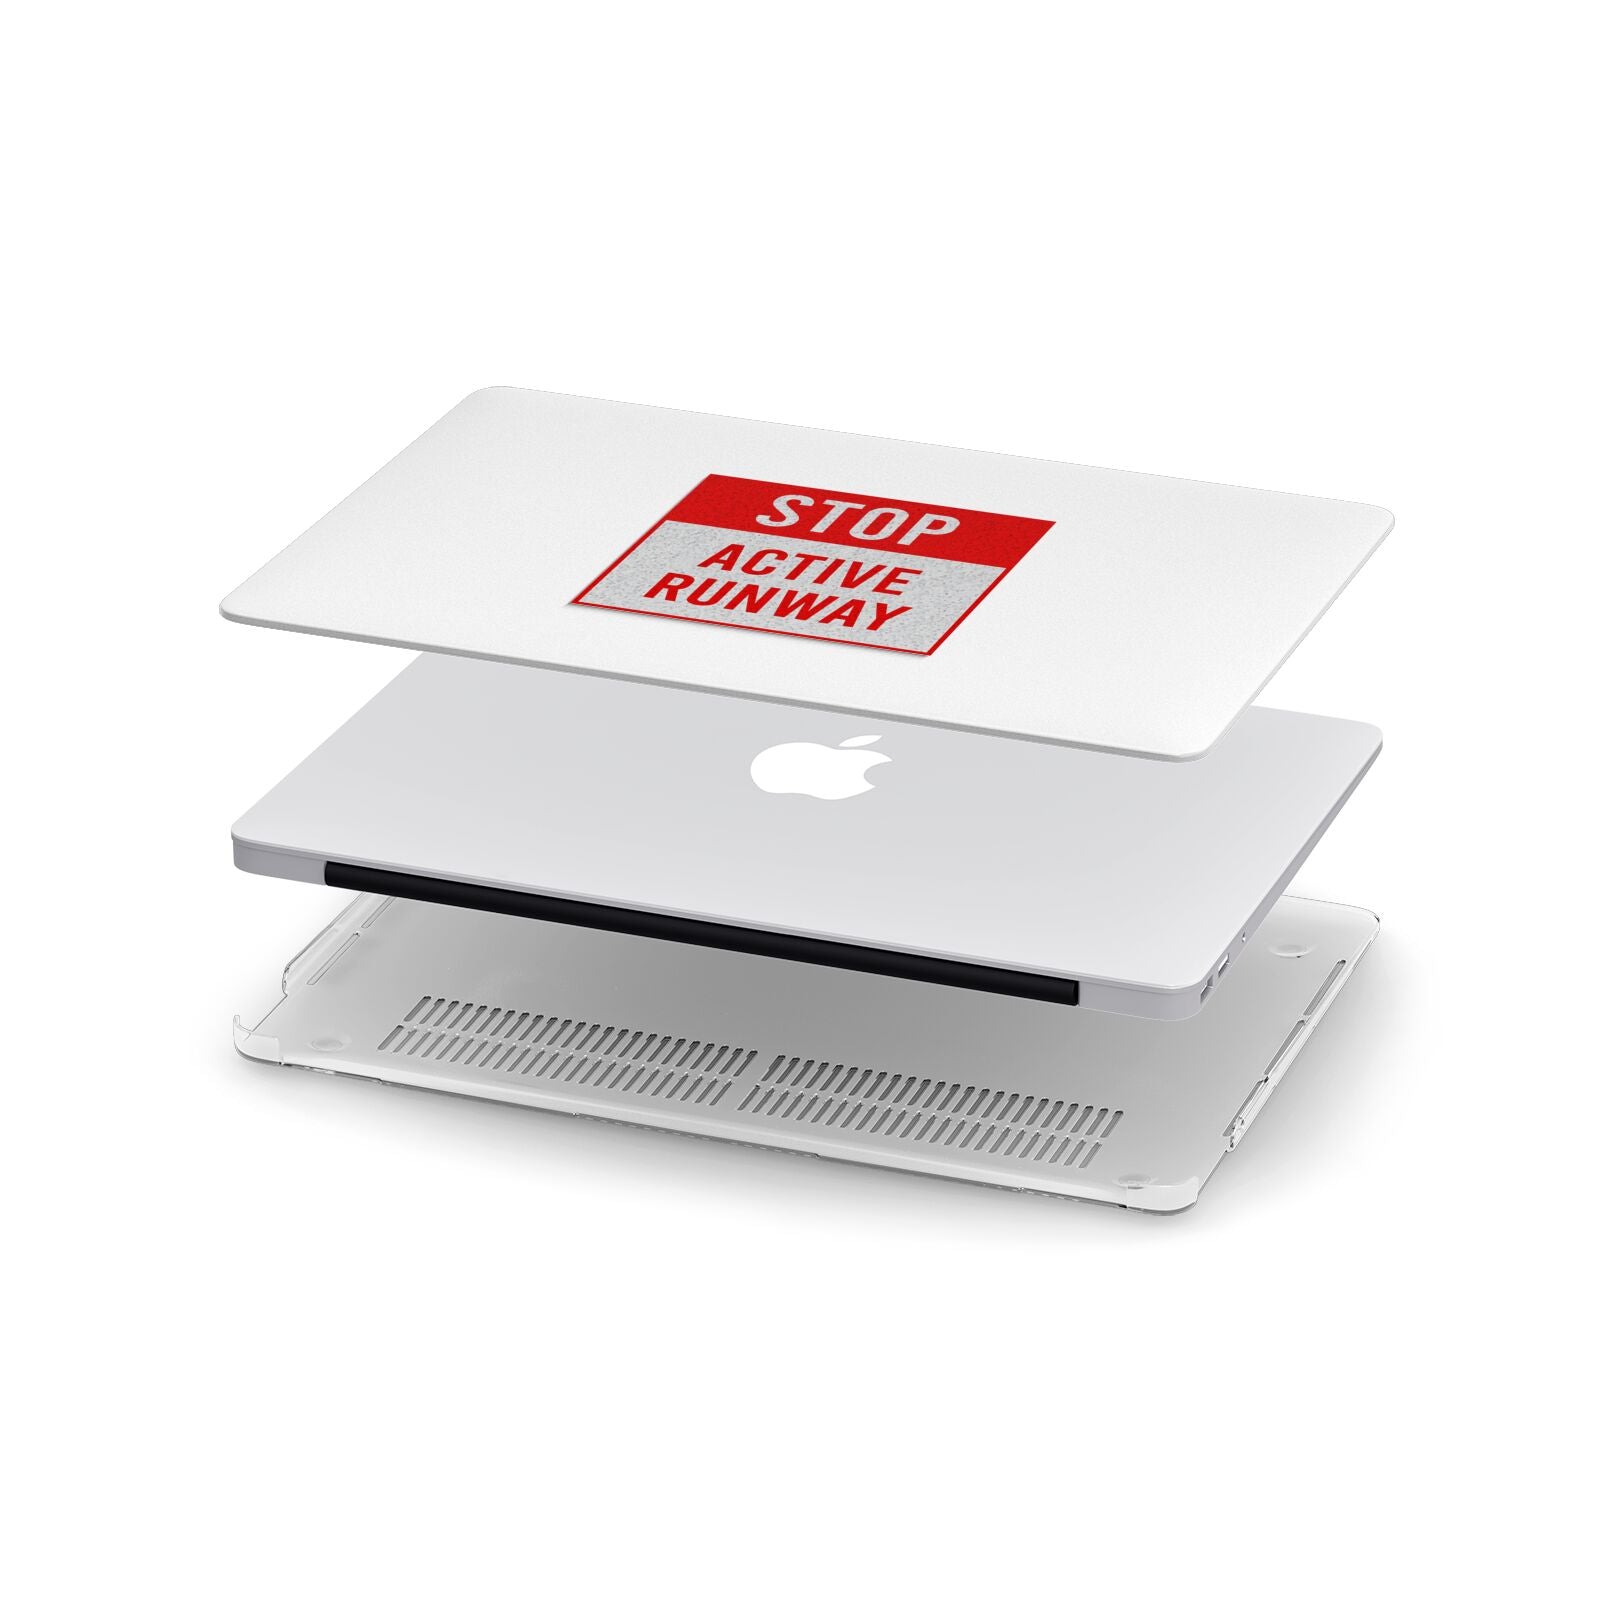 Stop Active Runway Apple MacBook Case in Detail